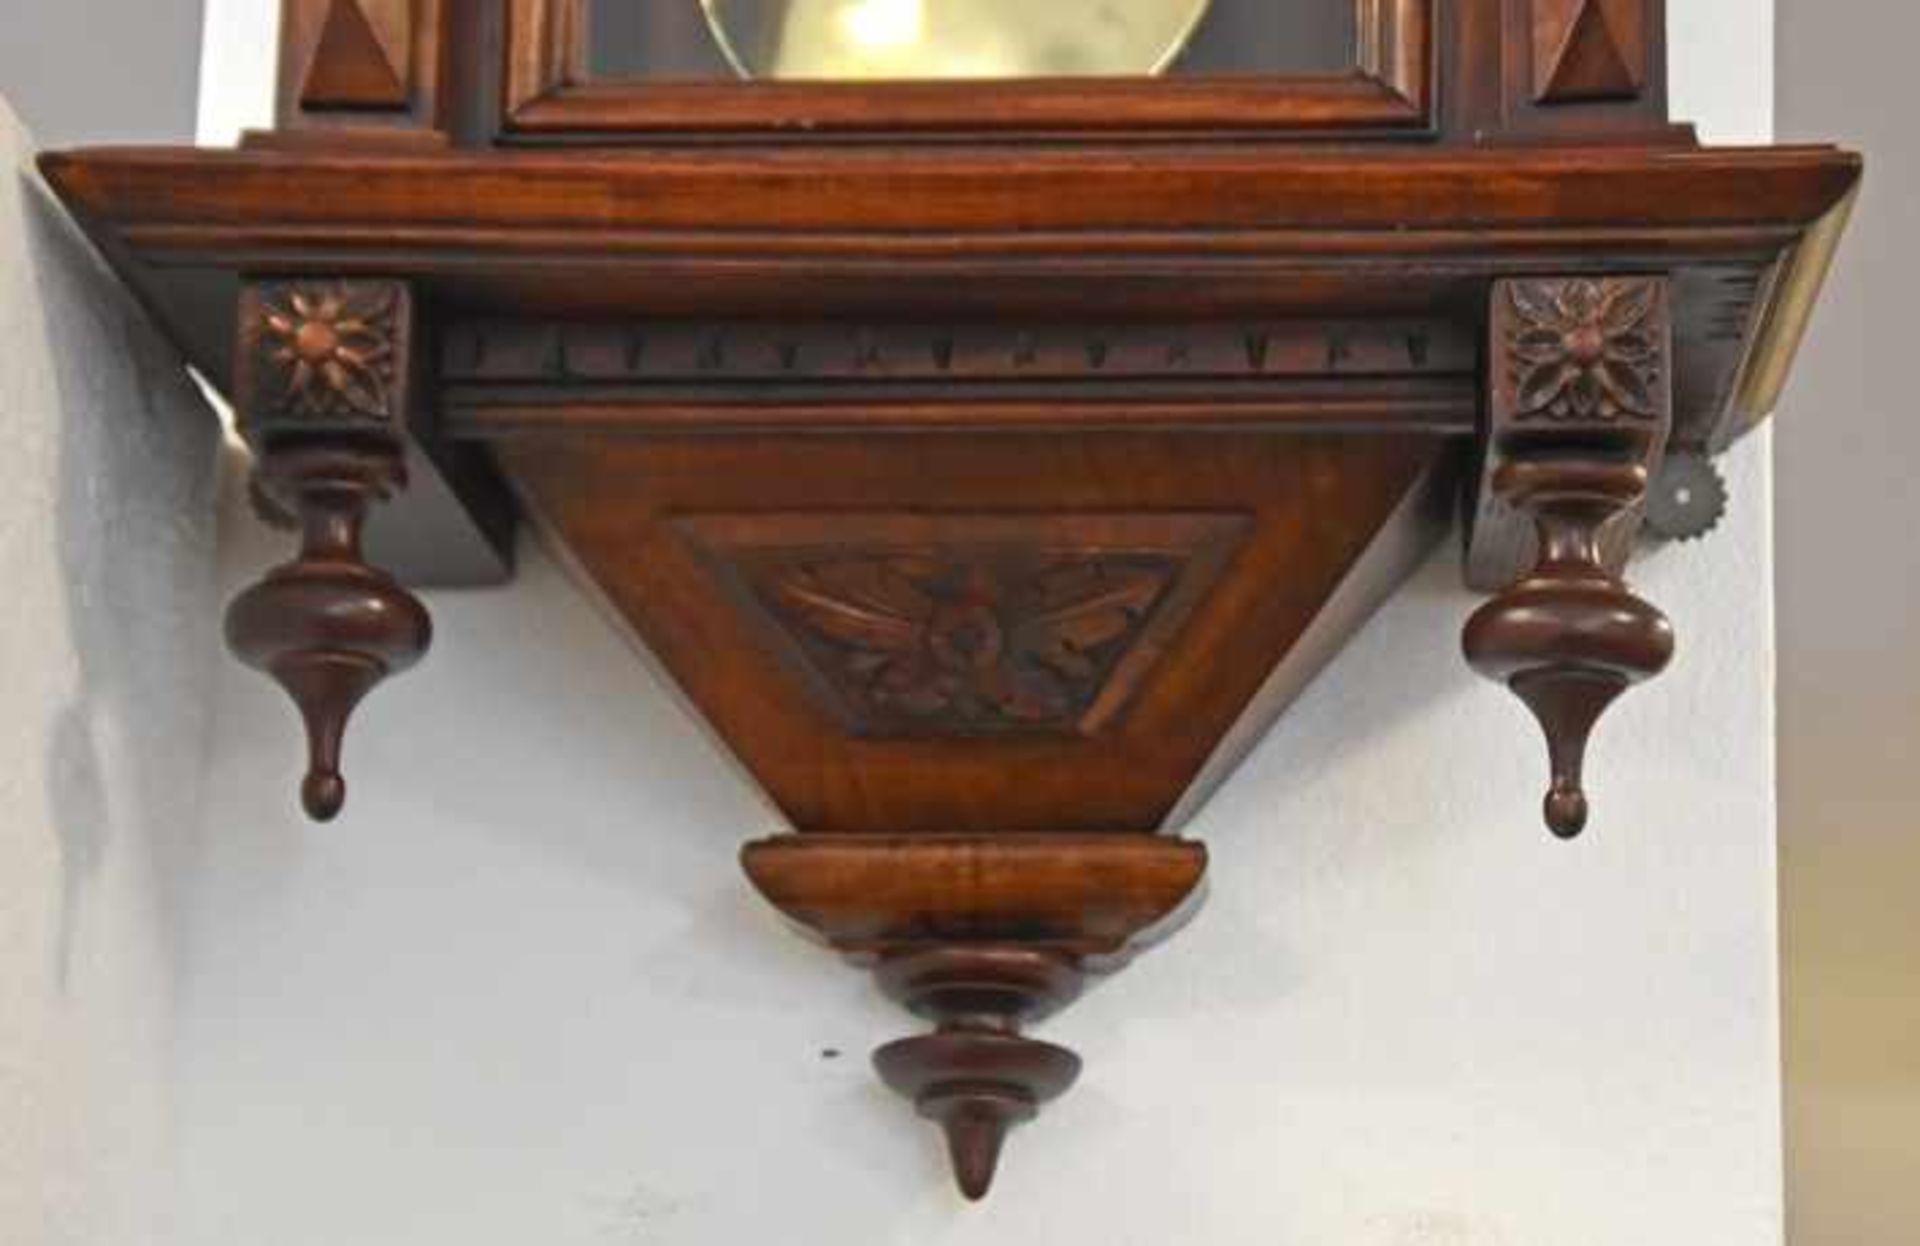 WIENER REGULATOR Gebrüder Resch Ebensee, dreiseitig verglastes Gehäuse aus dunkelbraunem Holz mit - Image 3 of 3